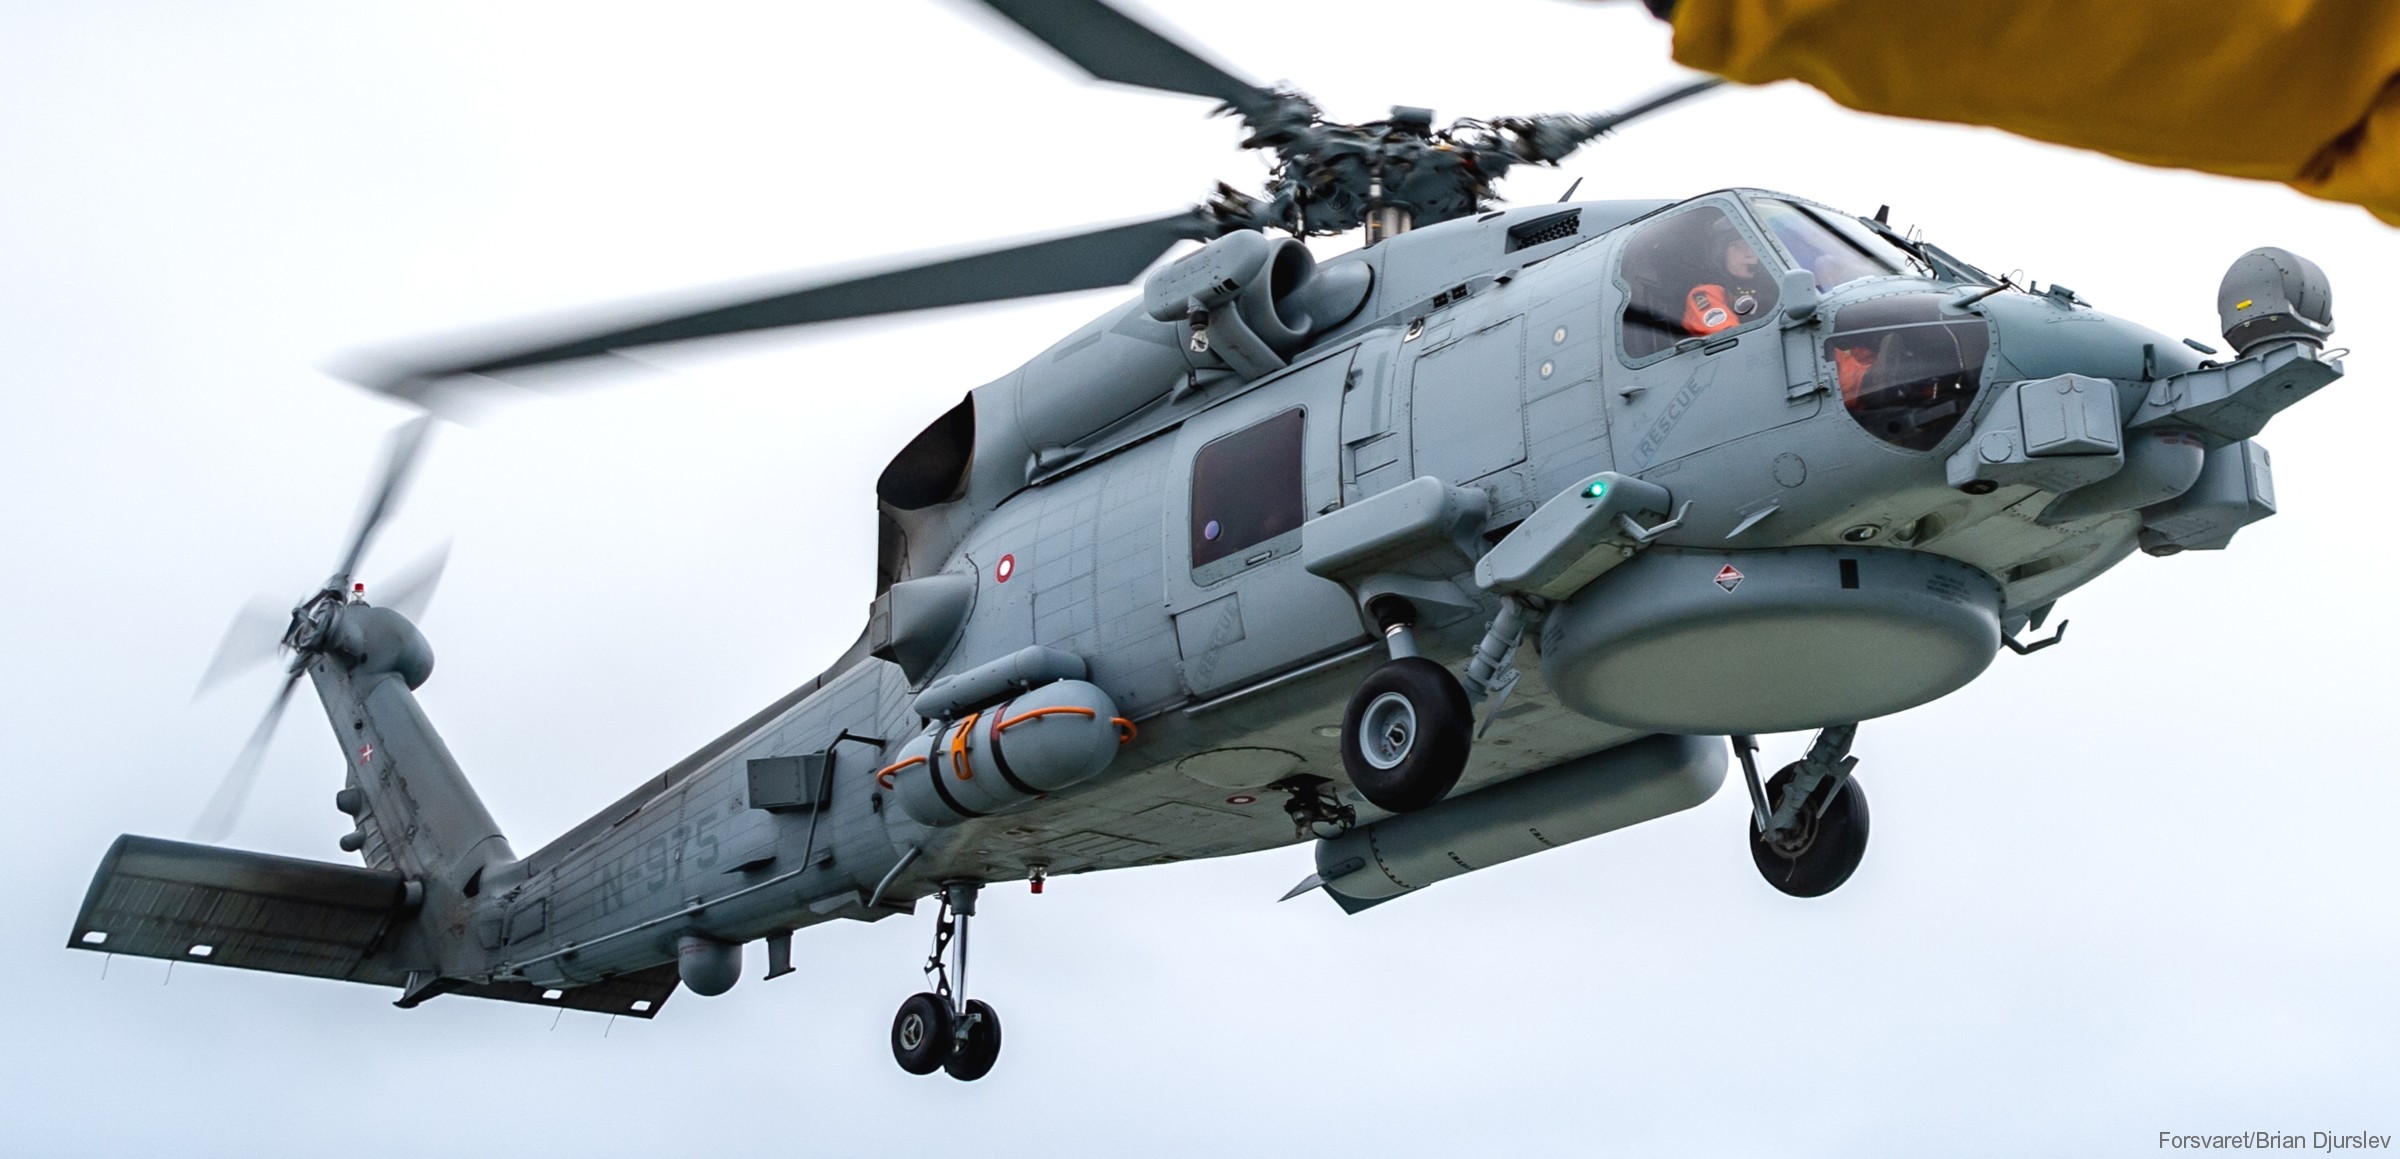 mh-60r seahawk royal danish navy air force flyvevåbnet kongelige danske marine sikorsky helicopter 723 eskadrille squadron karup 14